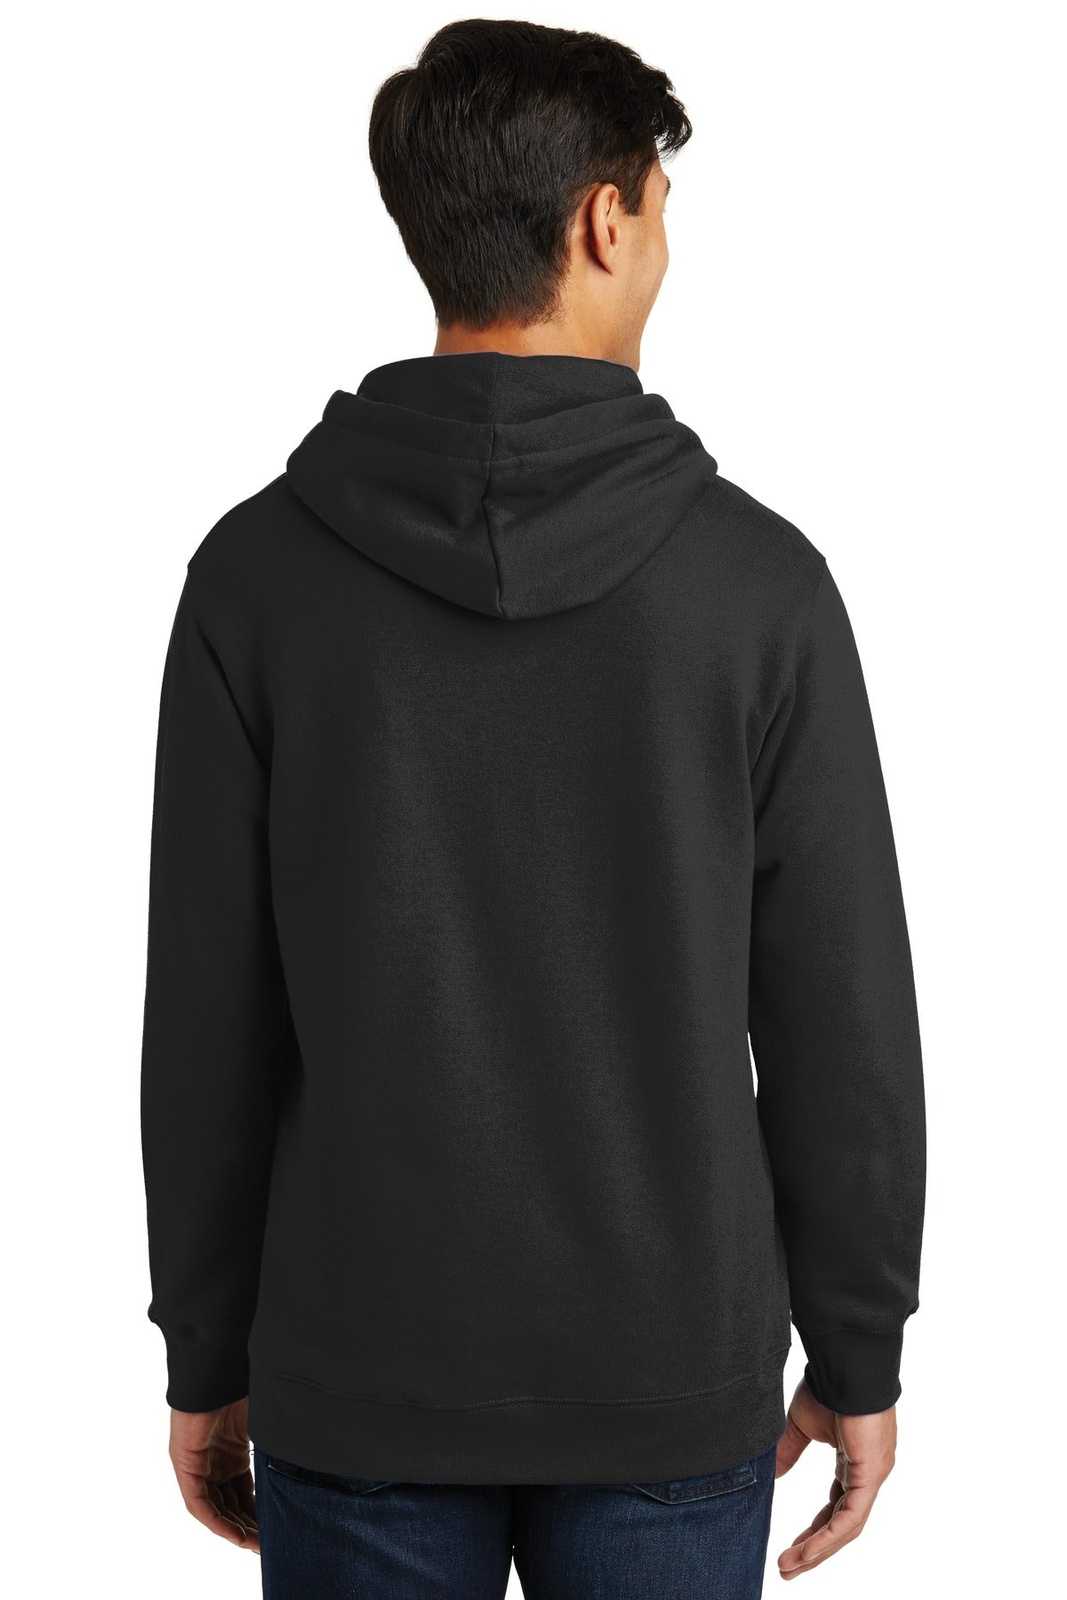 Port &amp; Company PC850H Fan Favorite Fleece Pullover Hooded Sweatshirt - Jet Black - HIT a Double - 2